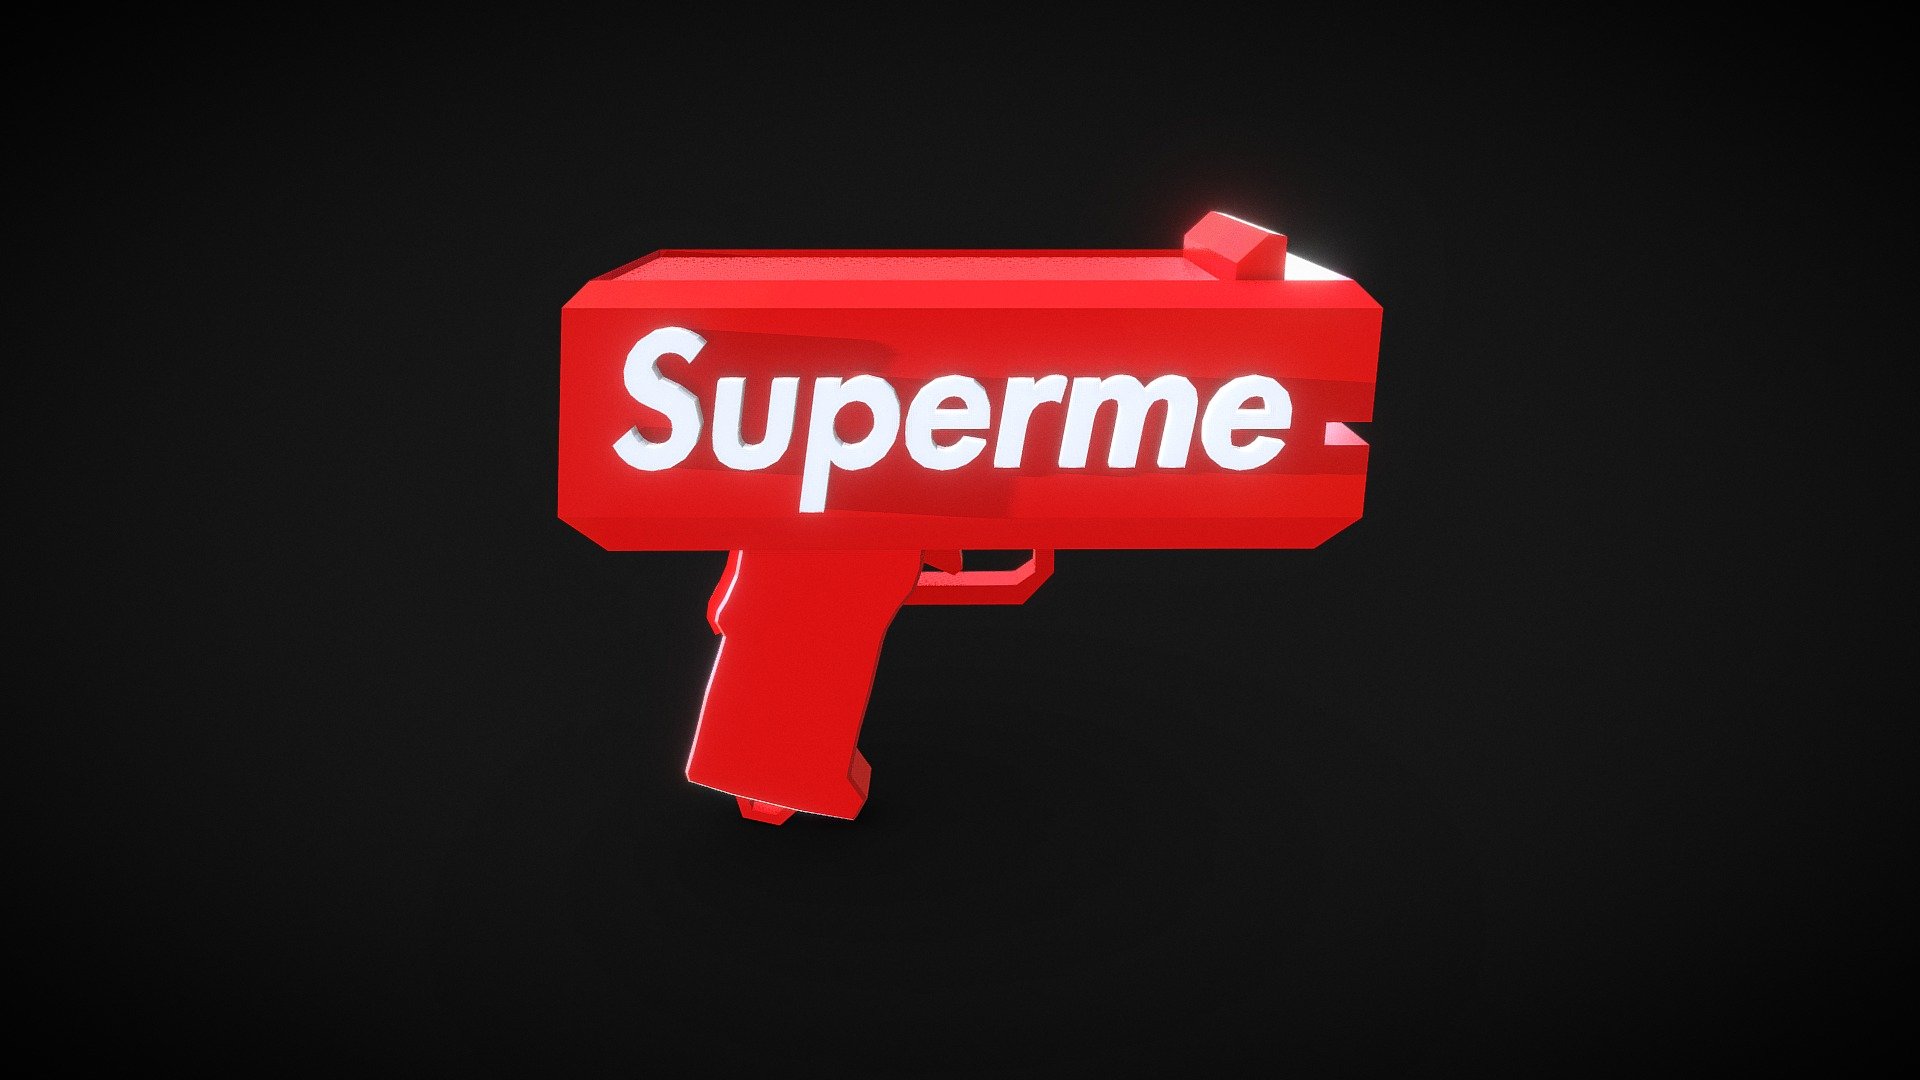 Superme - 3D model by rendorshen (@rendorshen) [efa6400]